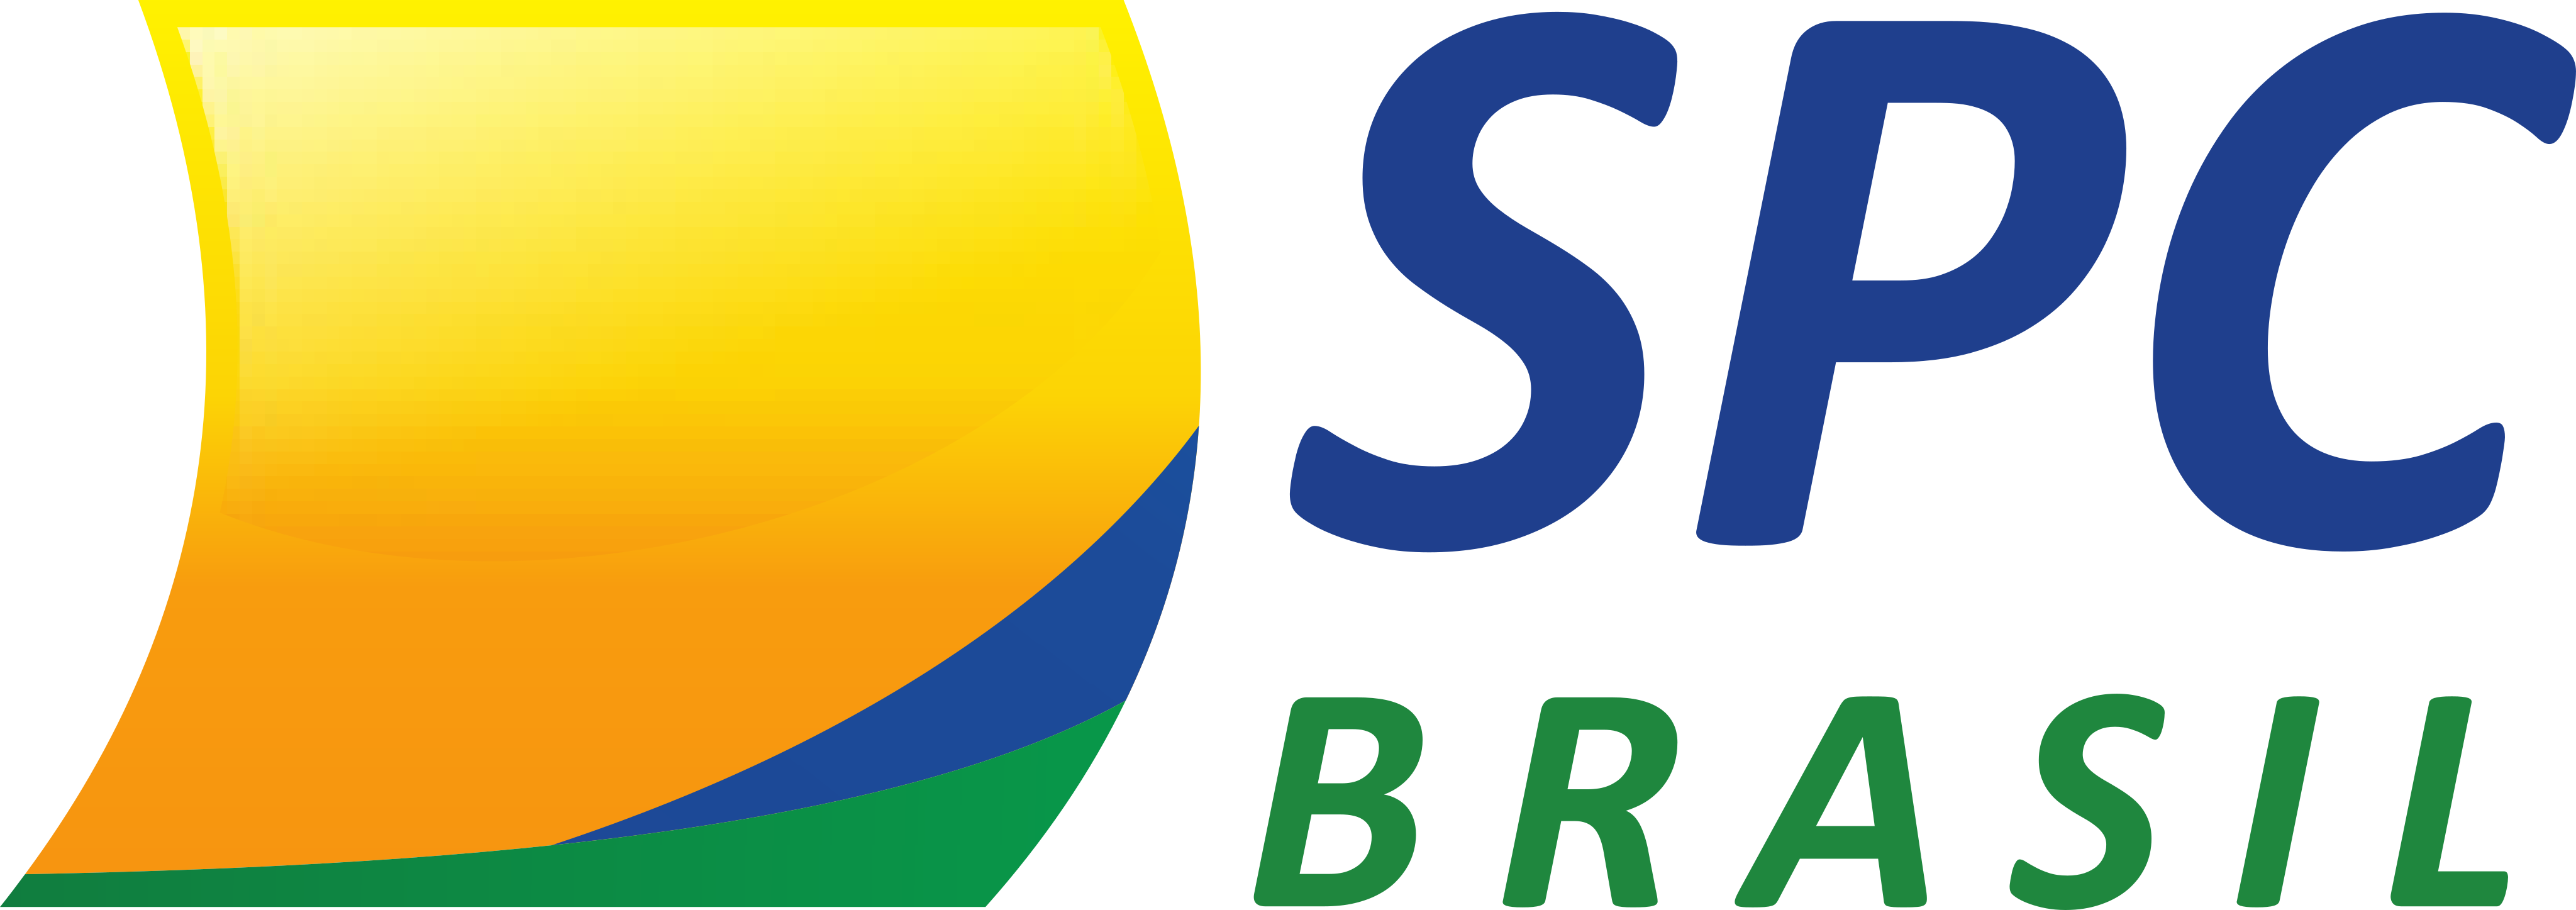 SPC Brasil Logo.